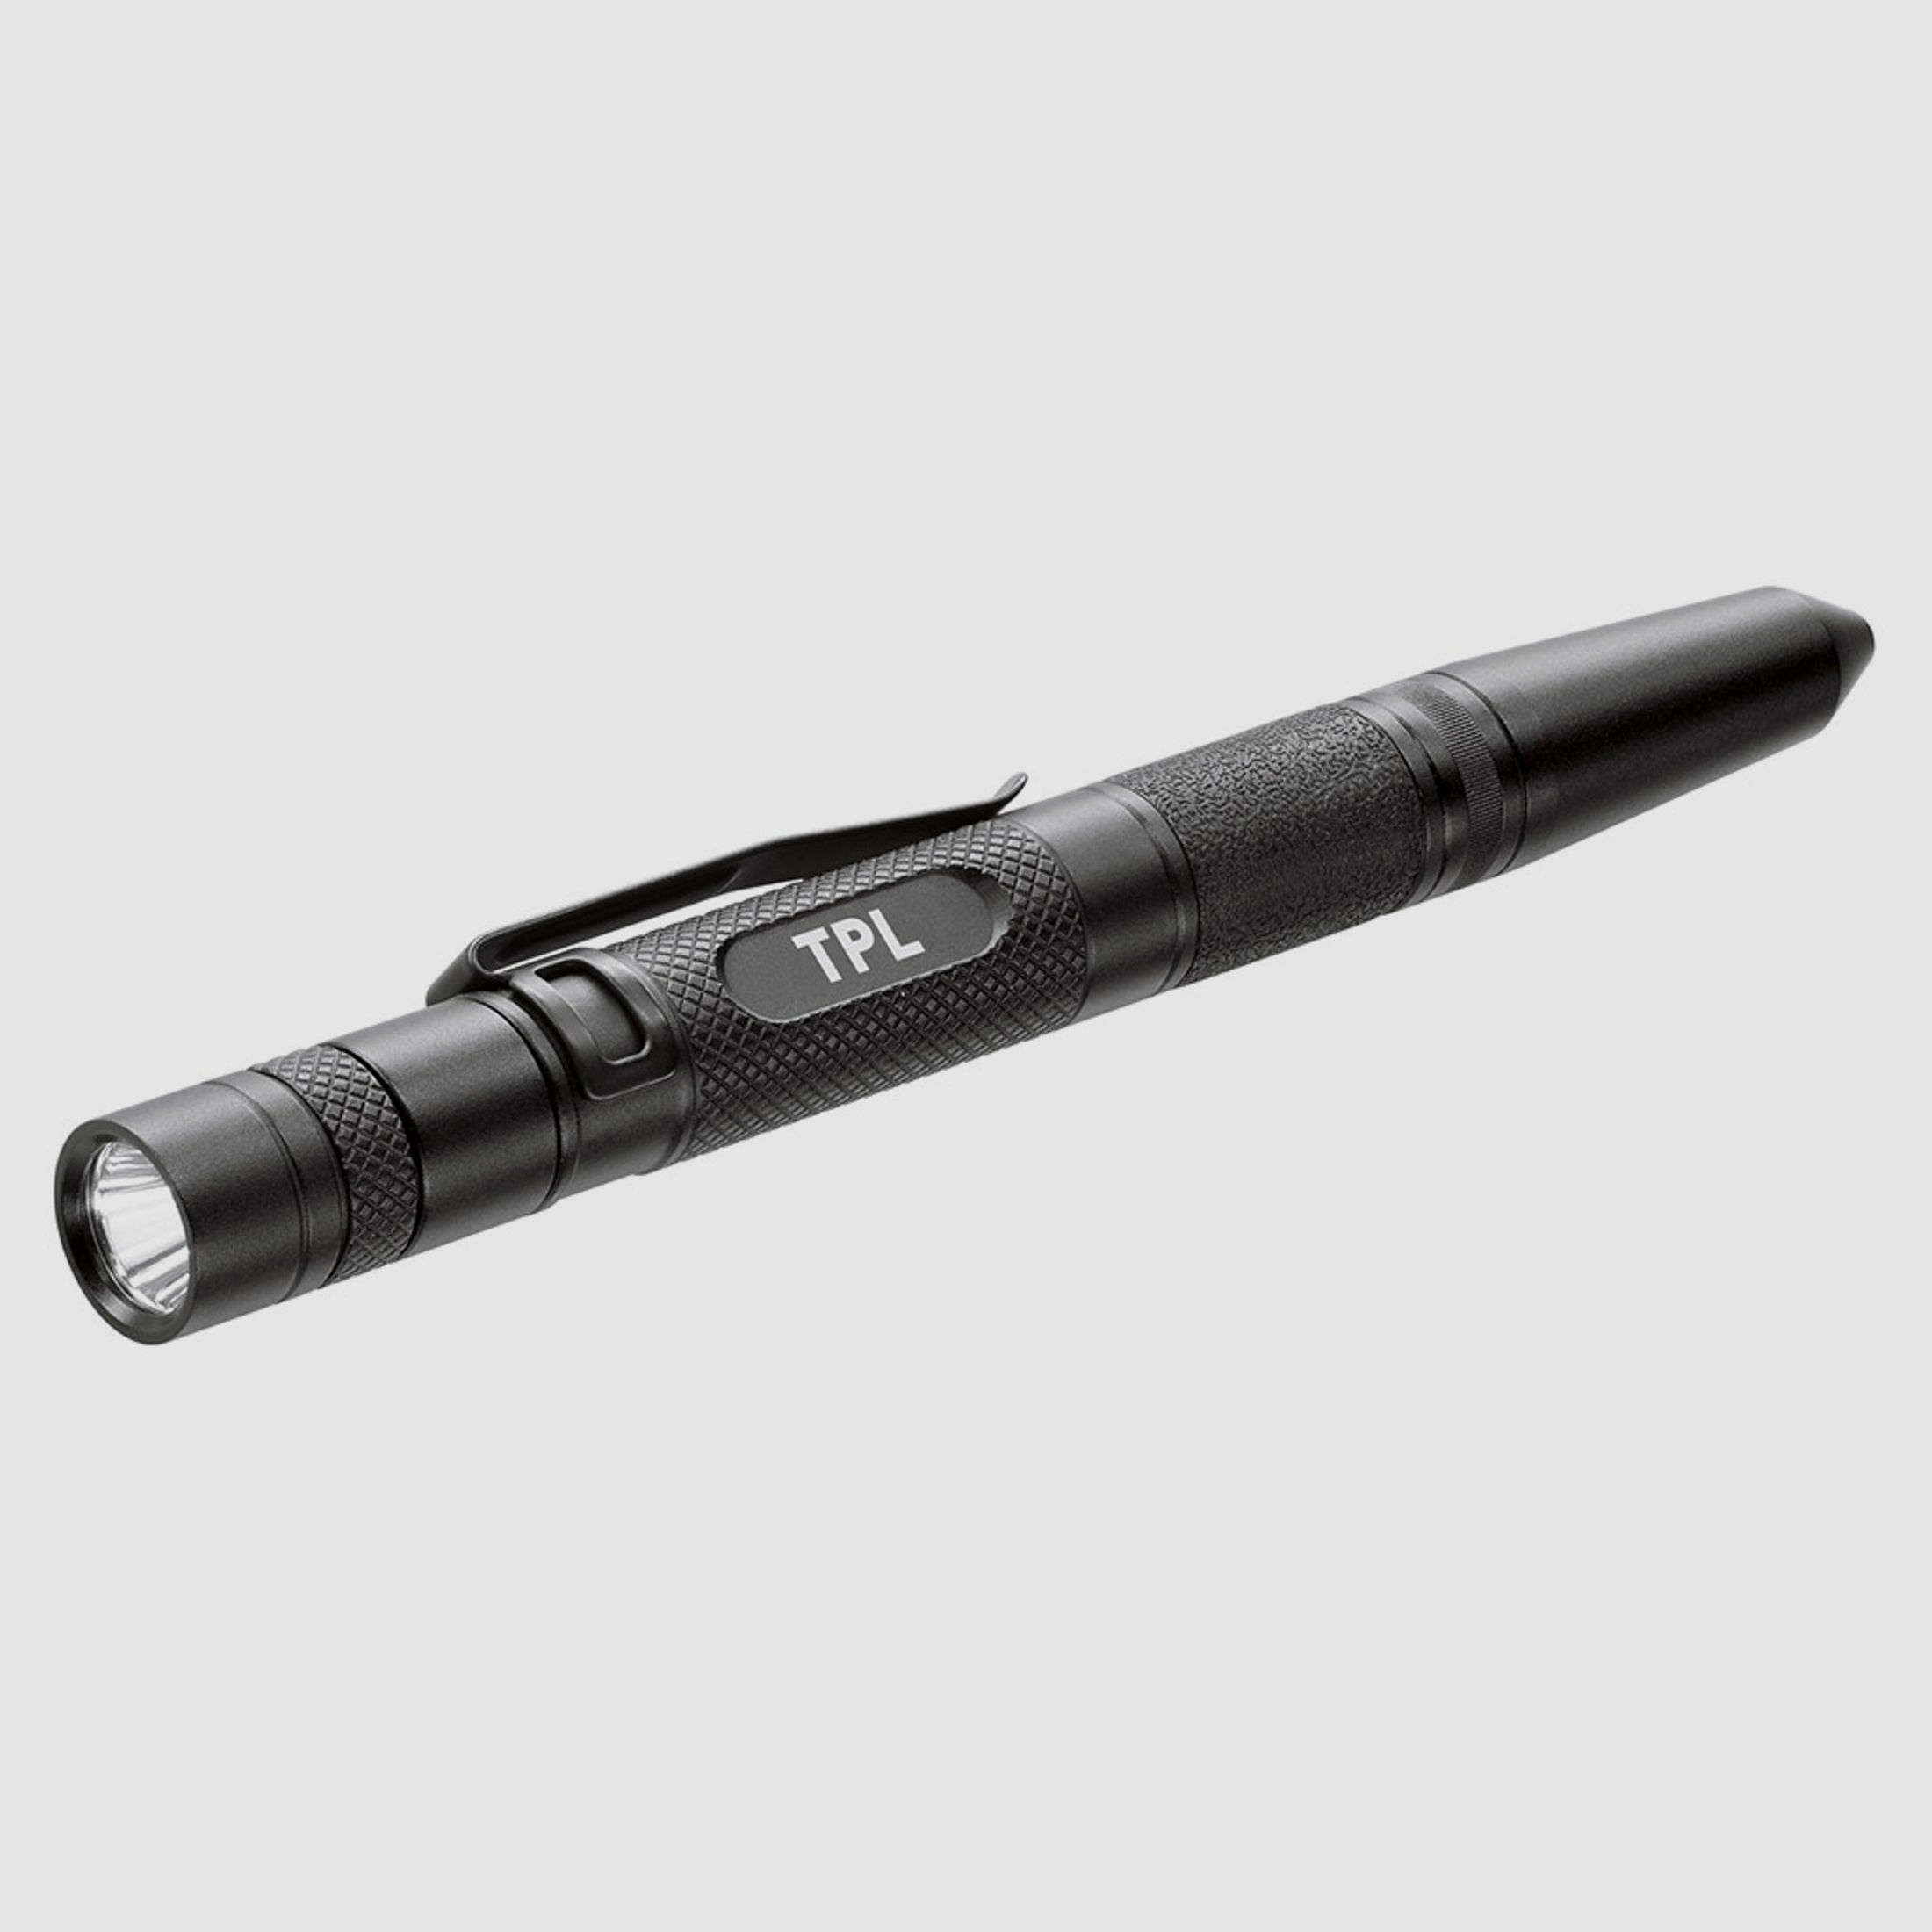 Taschenlampe Kubotan Kugelschreiber Glasbrecher Walther TPL Tactical Pen light schwarz 70 Lumen